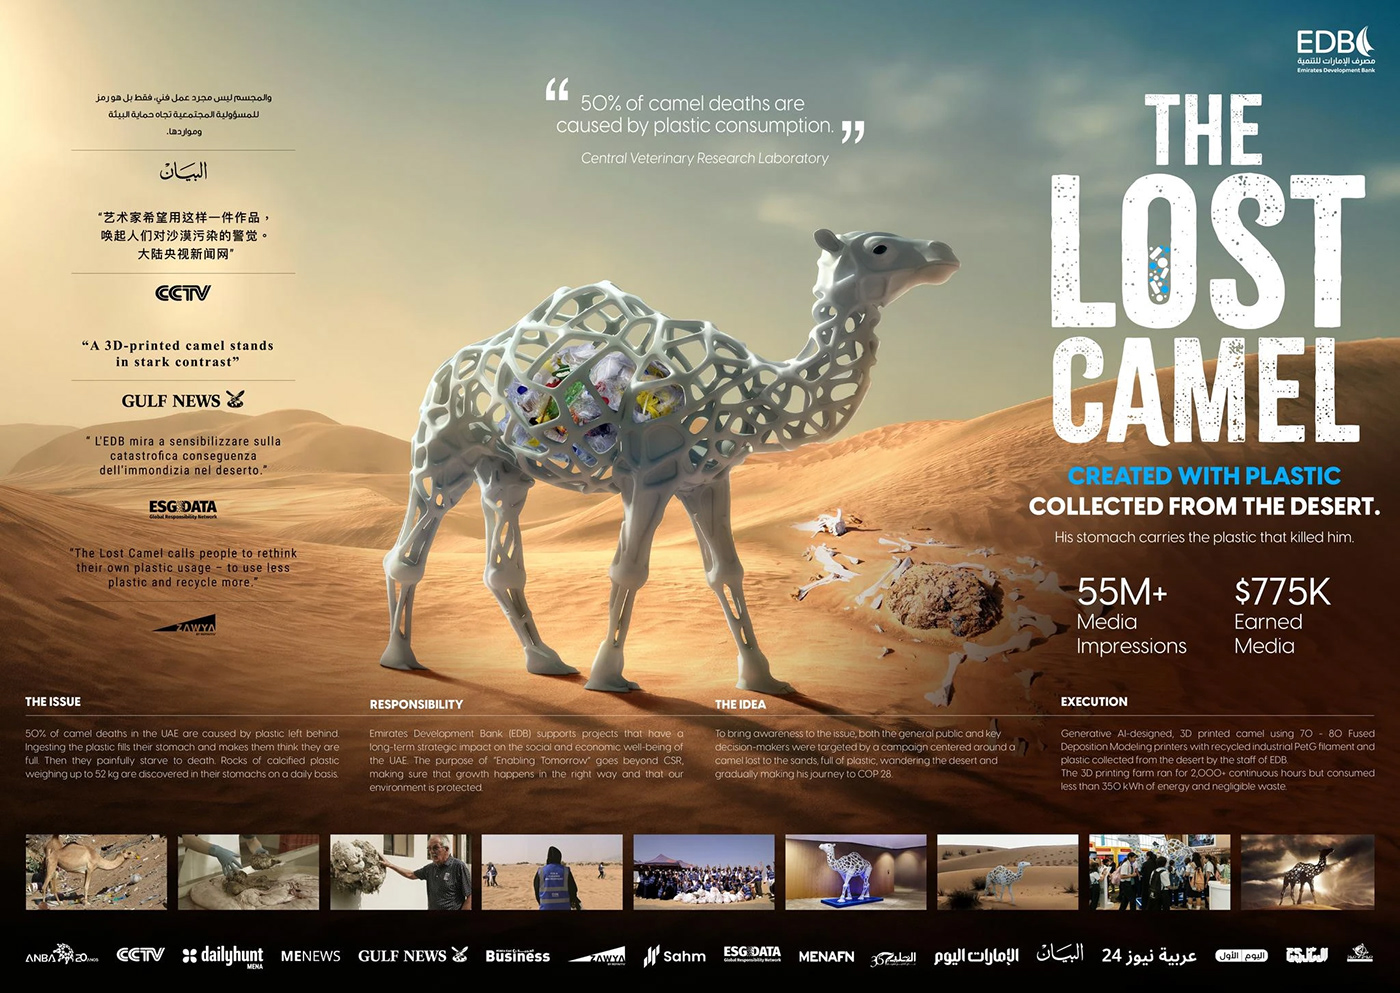 GRAND PRIX Outdoor dubai desert environment Bank lost camel